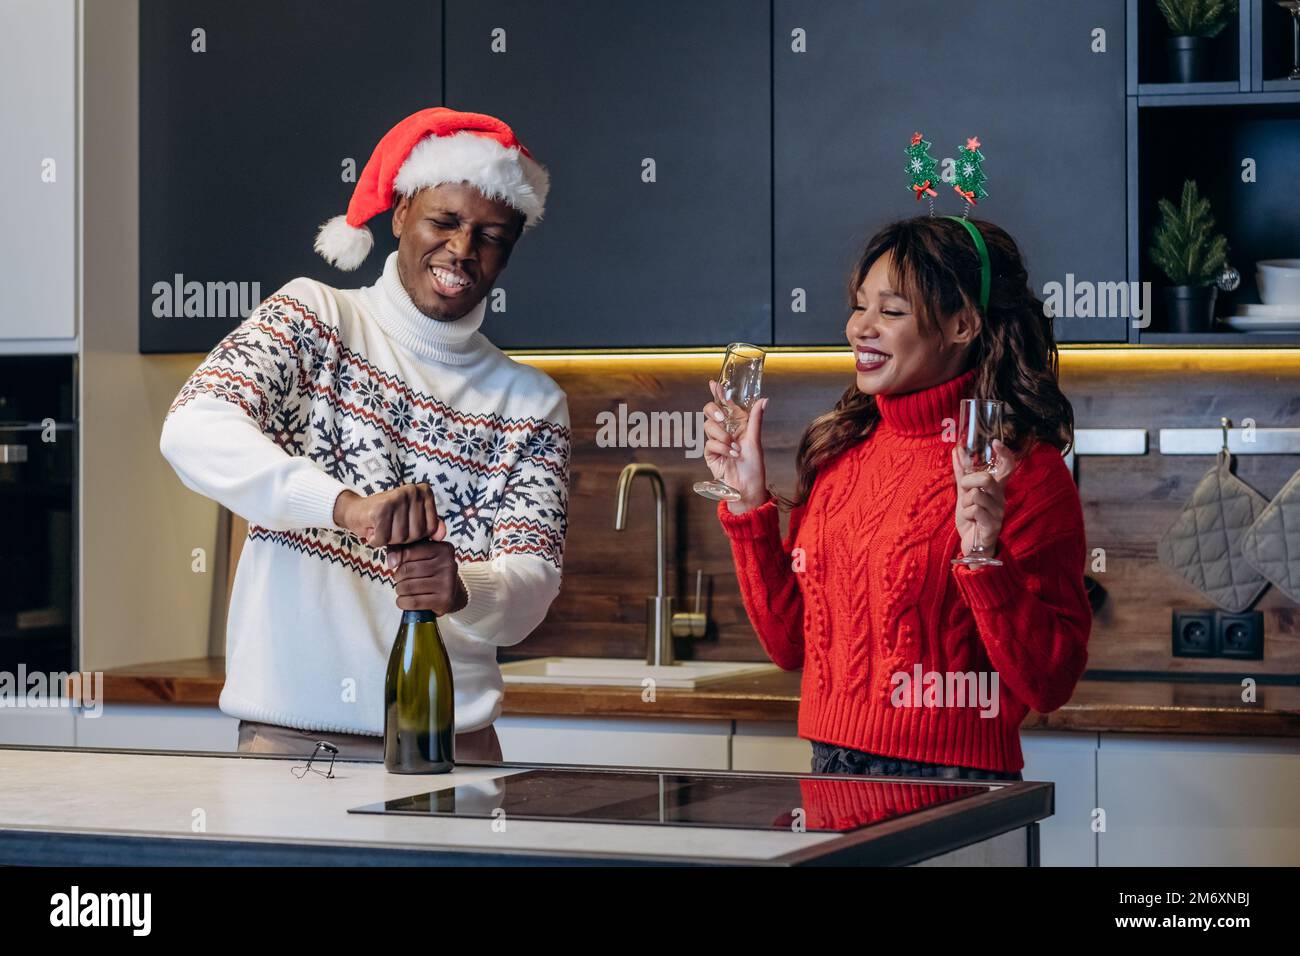 Jeune femme blanche et homme noir en chapeaux de fête et chandails imprimés colorés verser du champagne dans des verres à vin célébrant Noël Banque D'Images